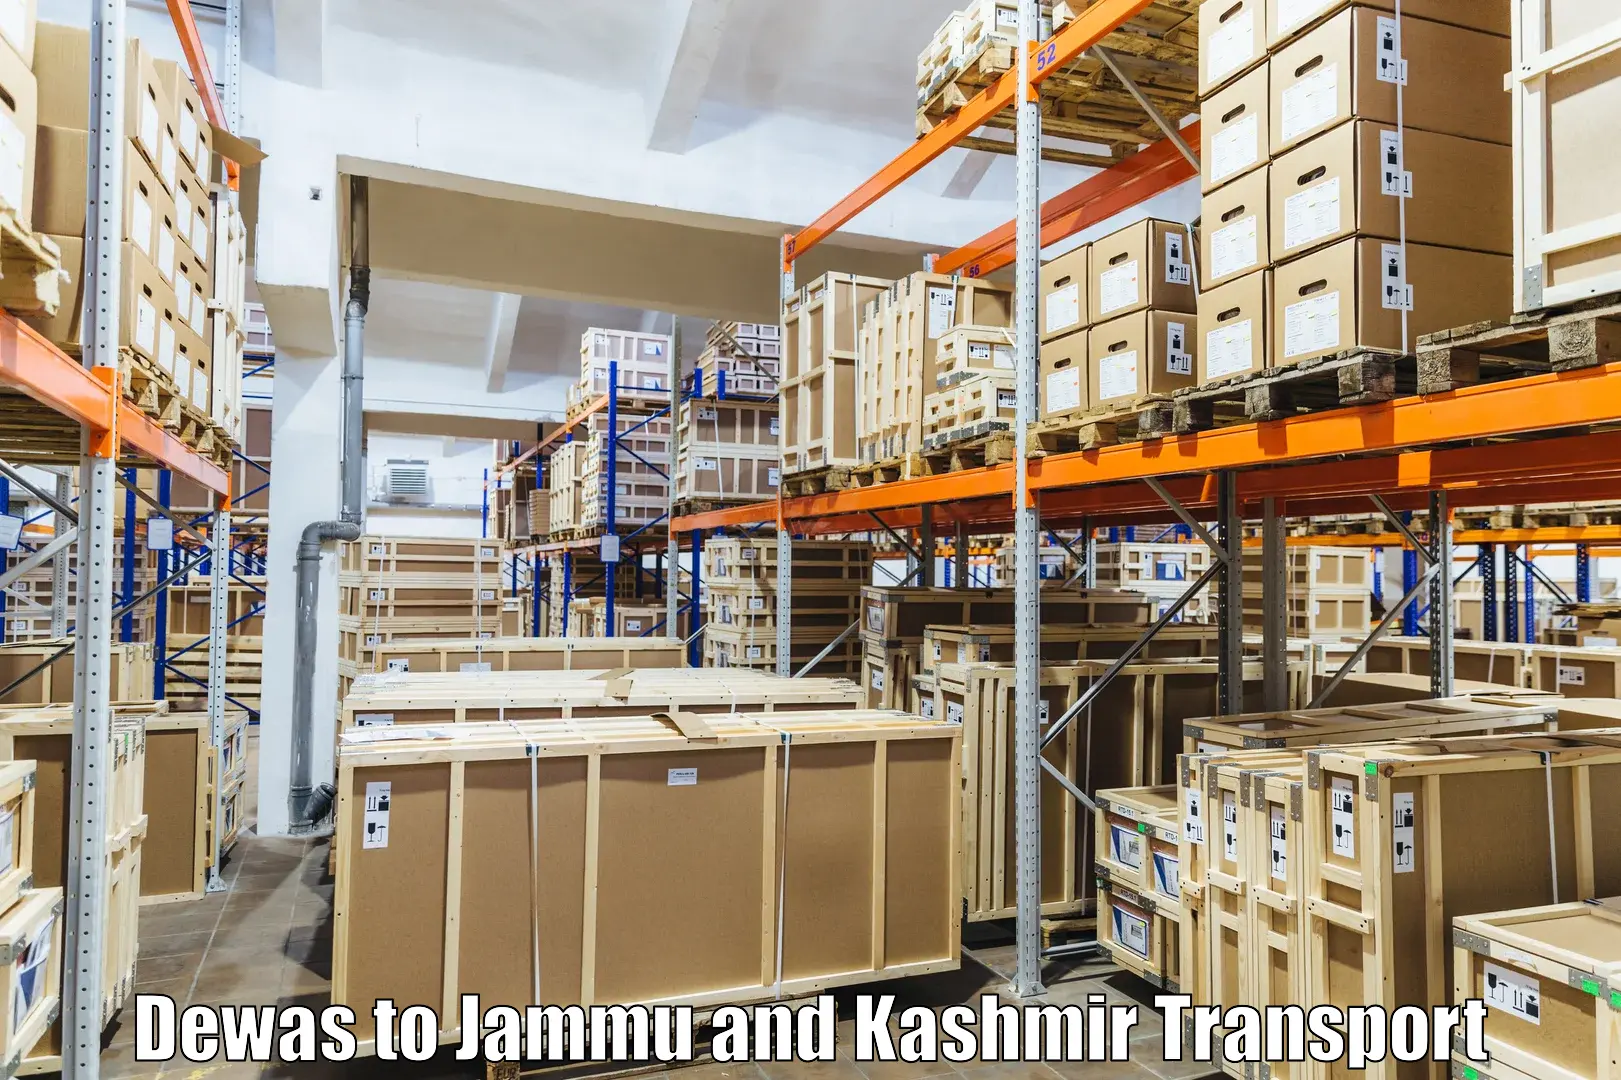 Air freight transport services Dewas to Srinagar Kashmir